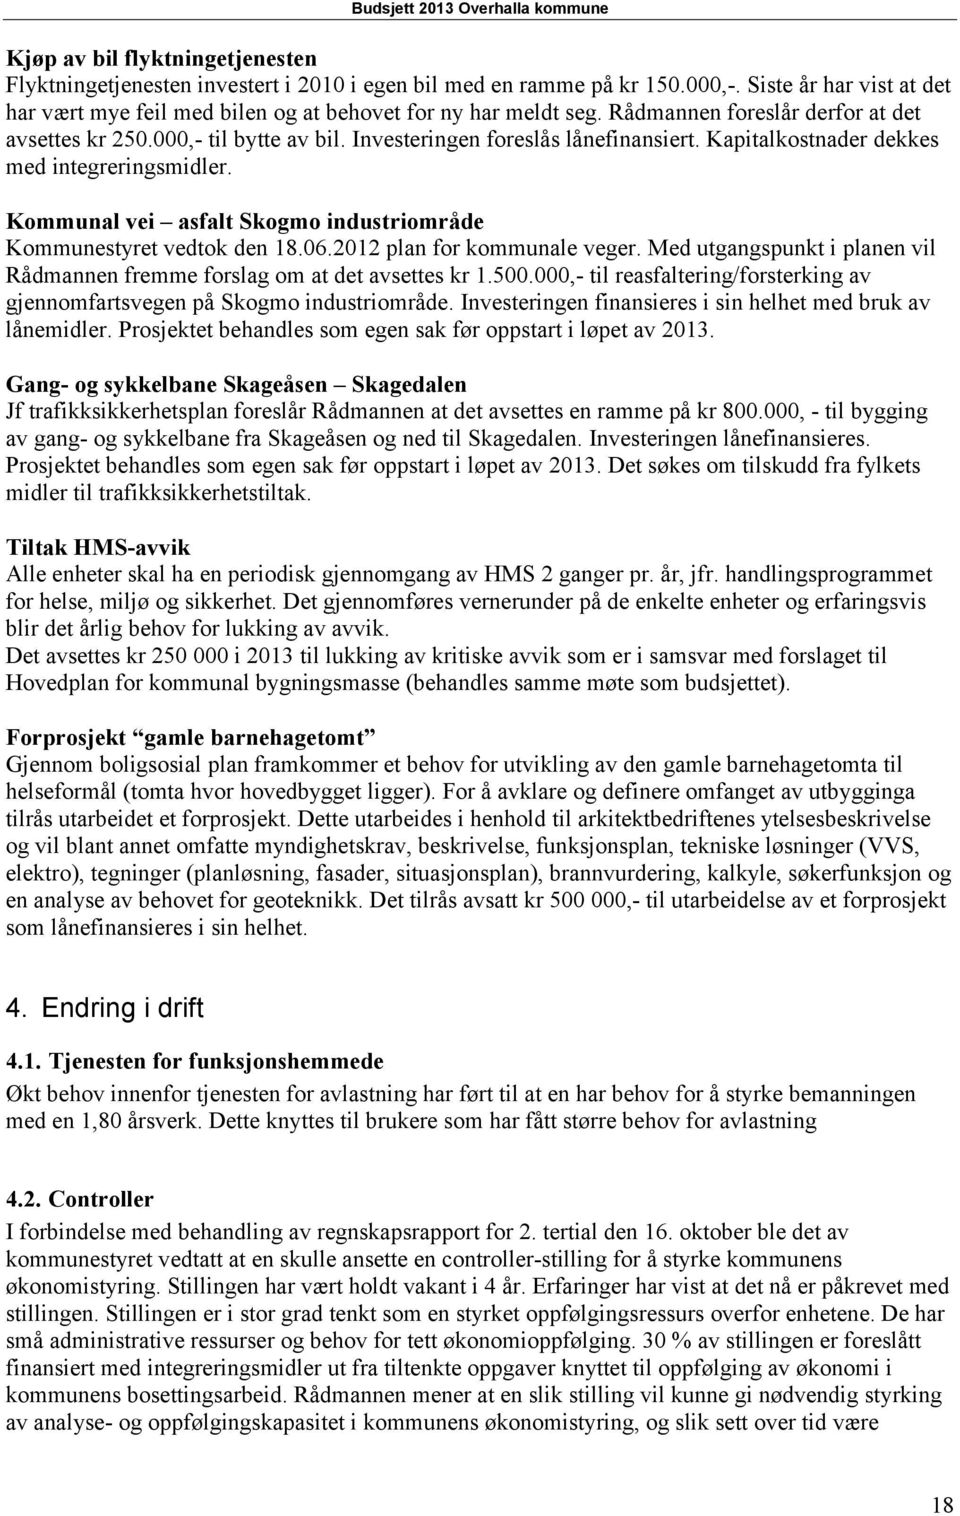 Kommunal vei asfalt Skogmo industriområde Kommunestyret vedtok den 18.06.2012 plan for kommunale veger. Med utgangspunkt i planen vil Rådmannen fremme forslag om at det avsettes kr 1.500.